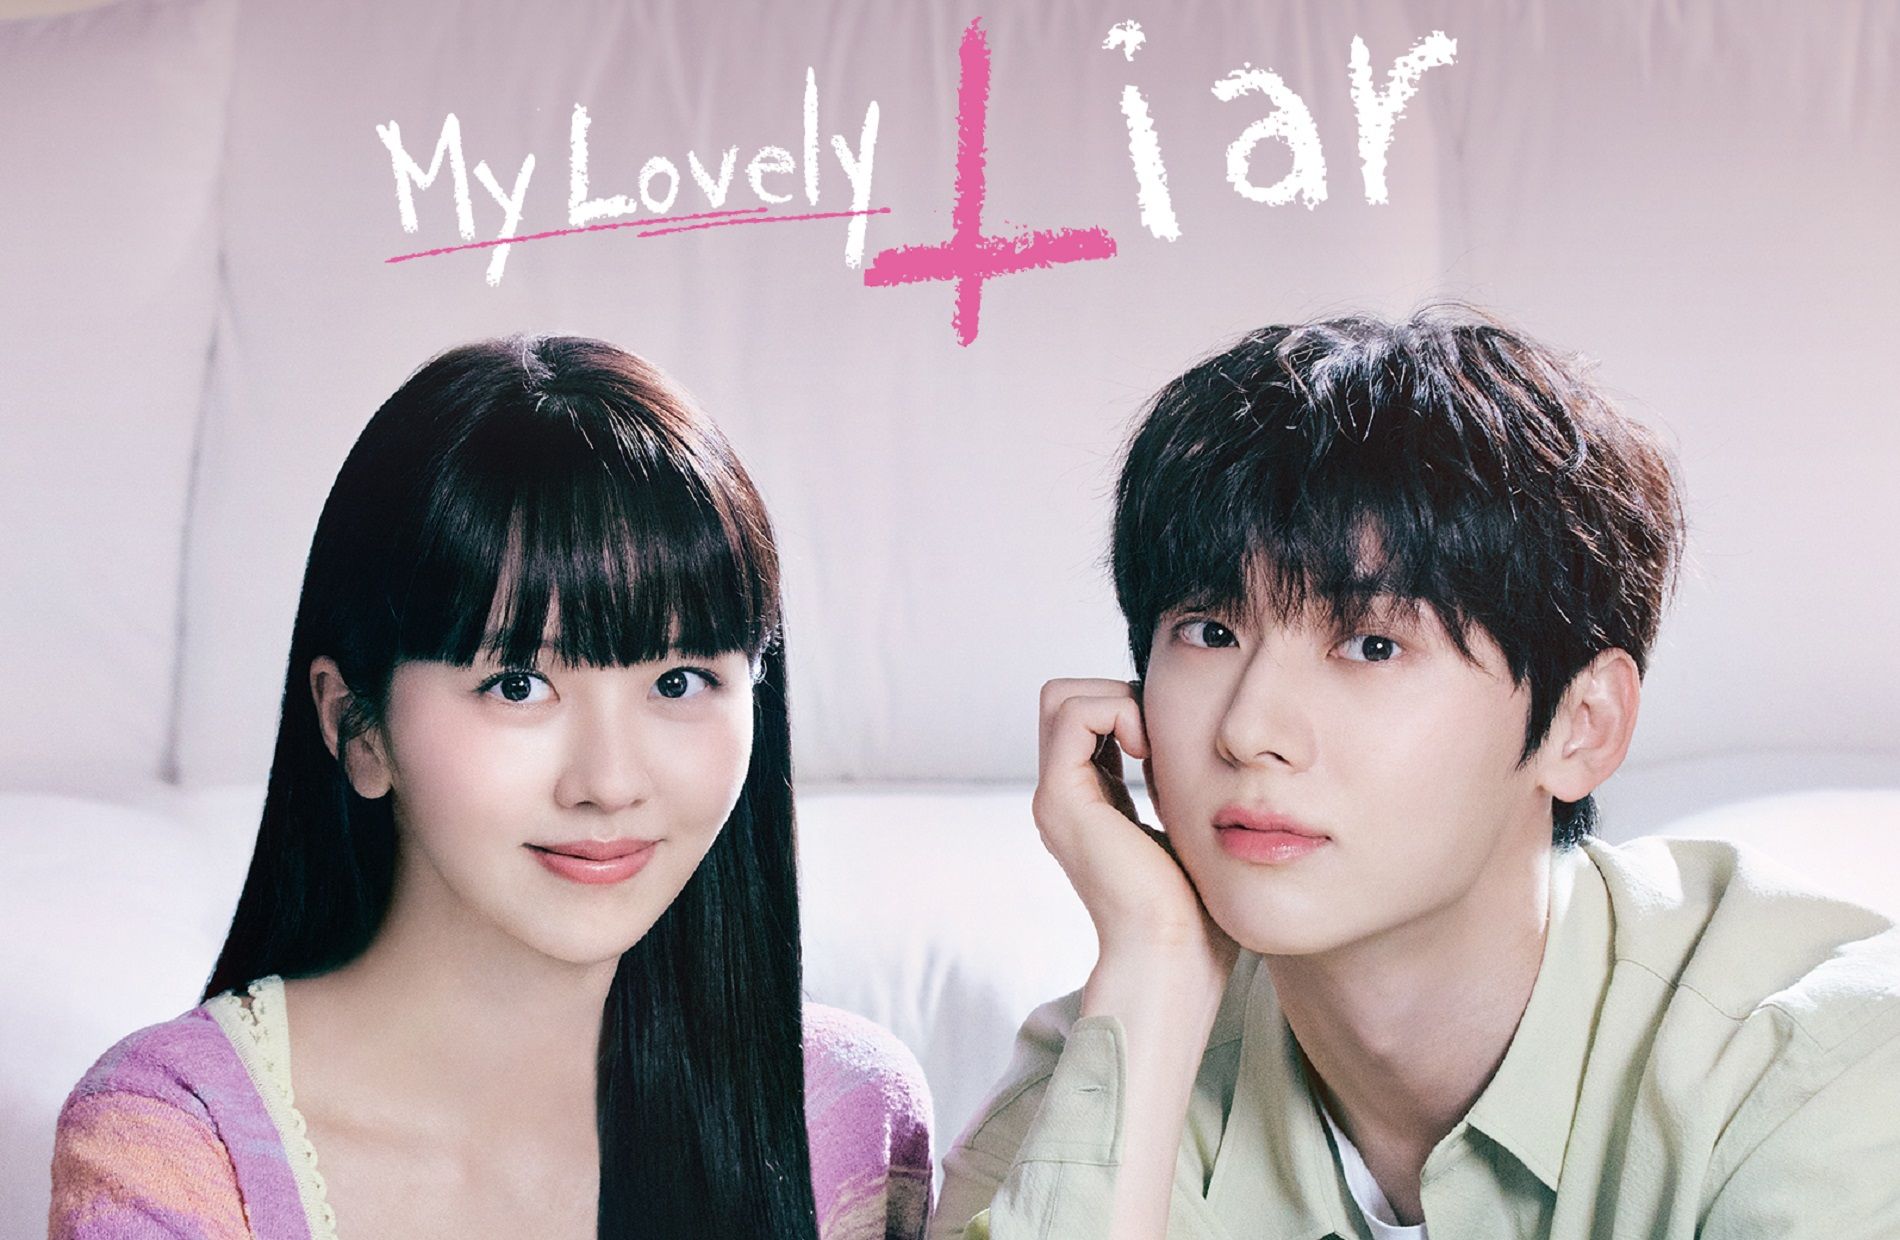 My Lovely Liar jadi salah satu rekomendasi drama Korea pekan ini.